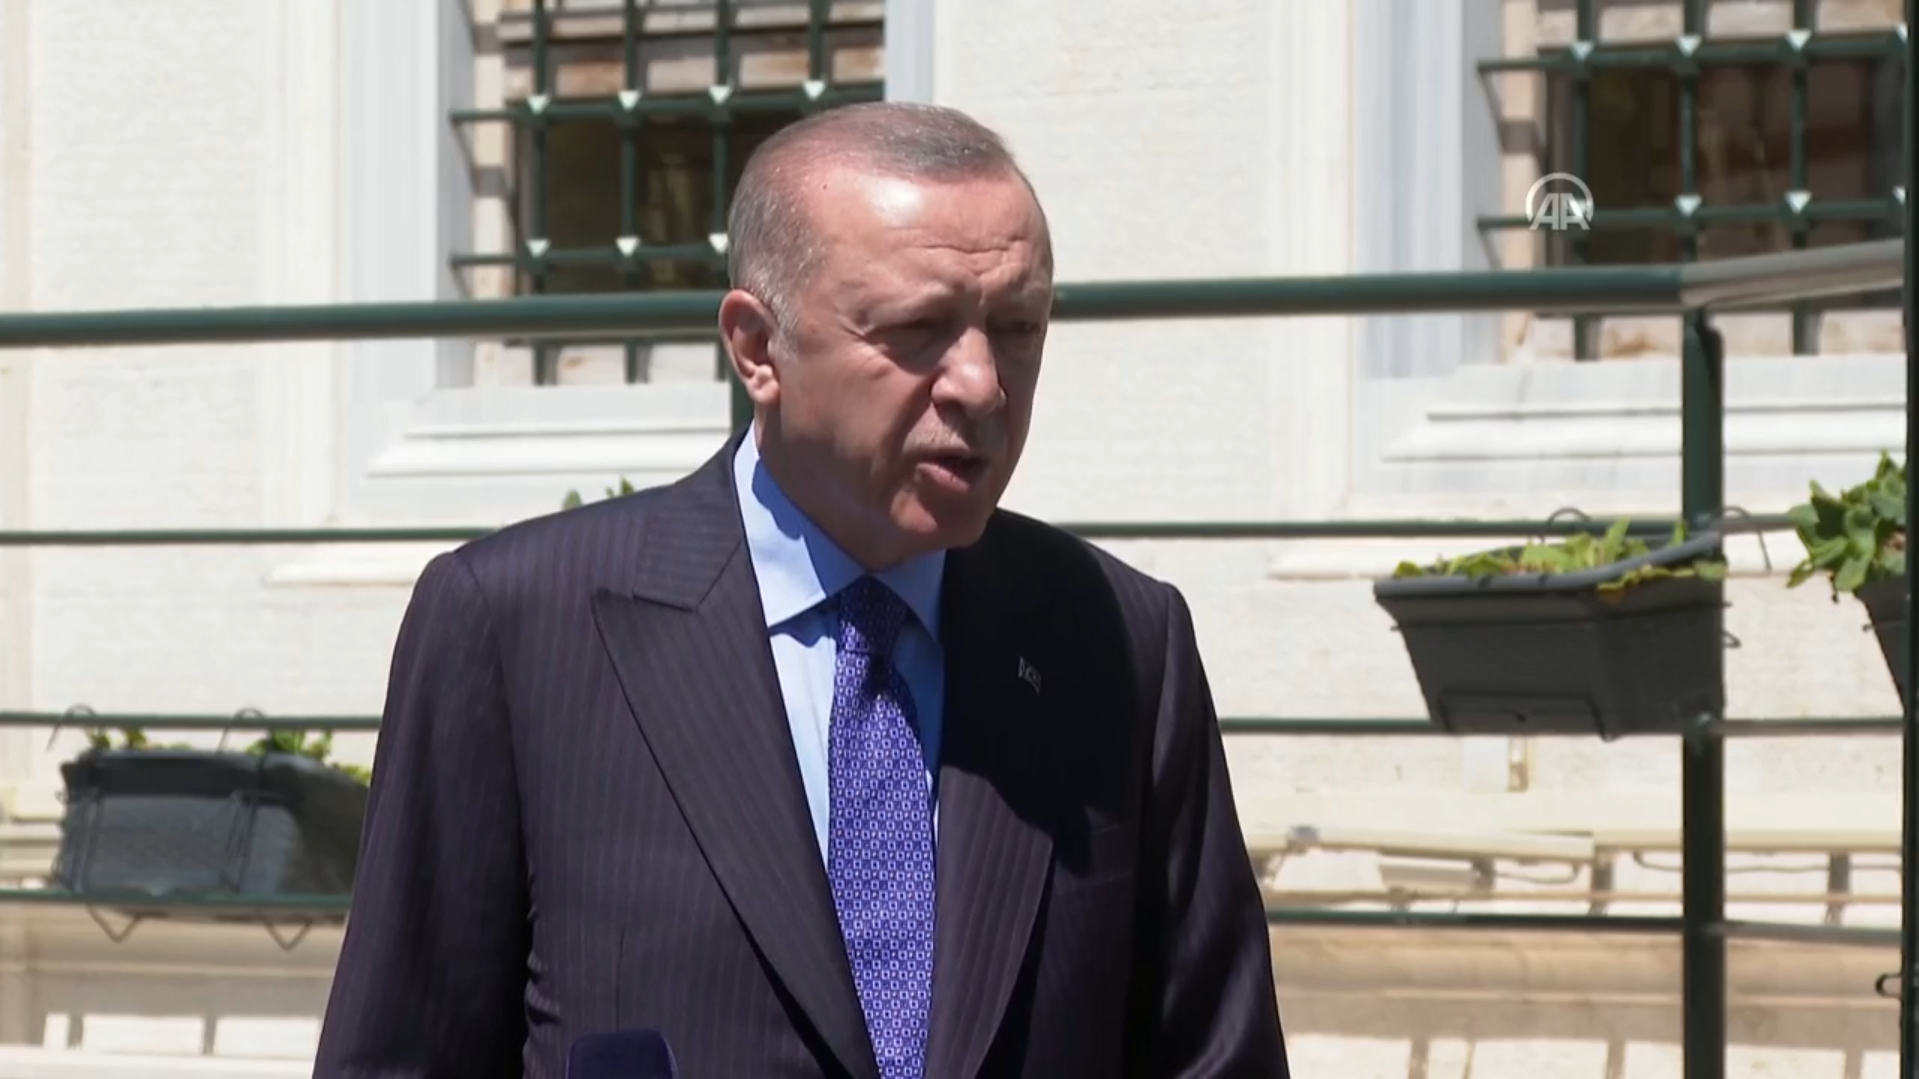 Cuma namazının ardından Cumhurbaşkanı Erdoğan’dan önemli açıklamalar